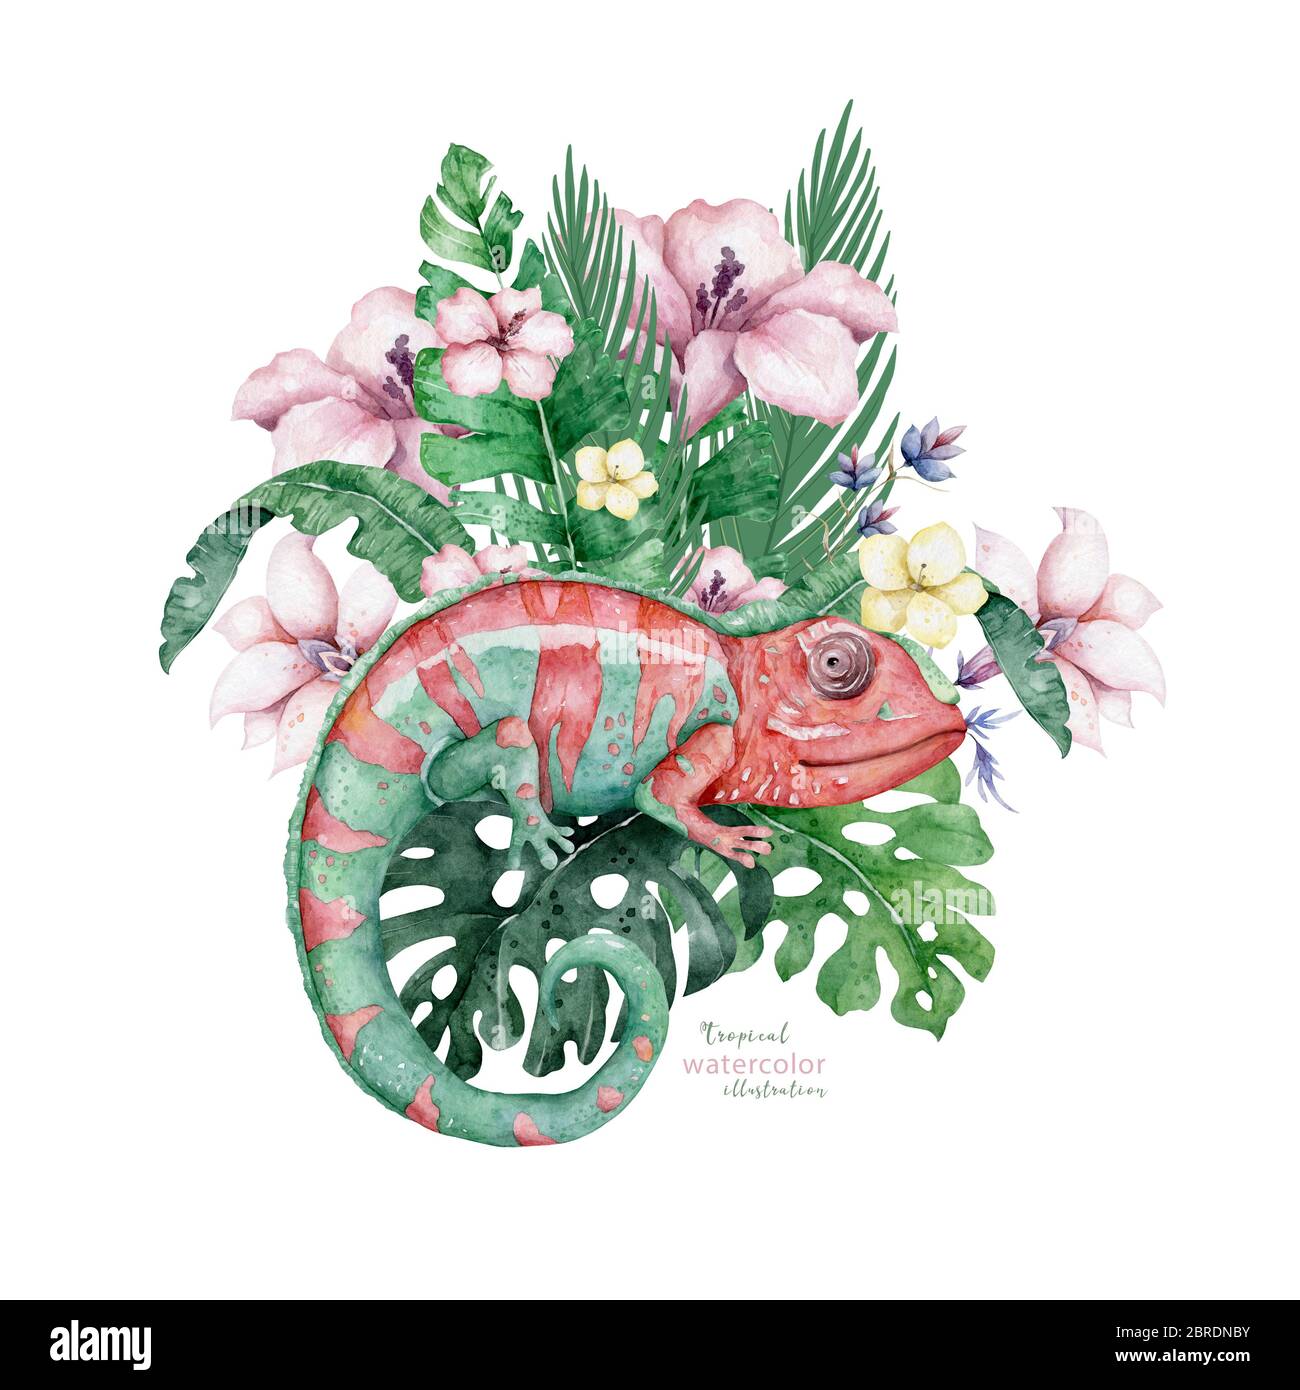 Caméléon Lizard avec fleurs tropicales dessin main aquarelle illustration isolée sur fond blanc Banque D'Images